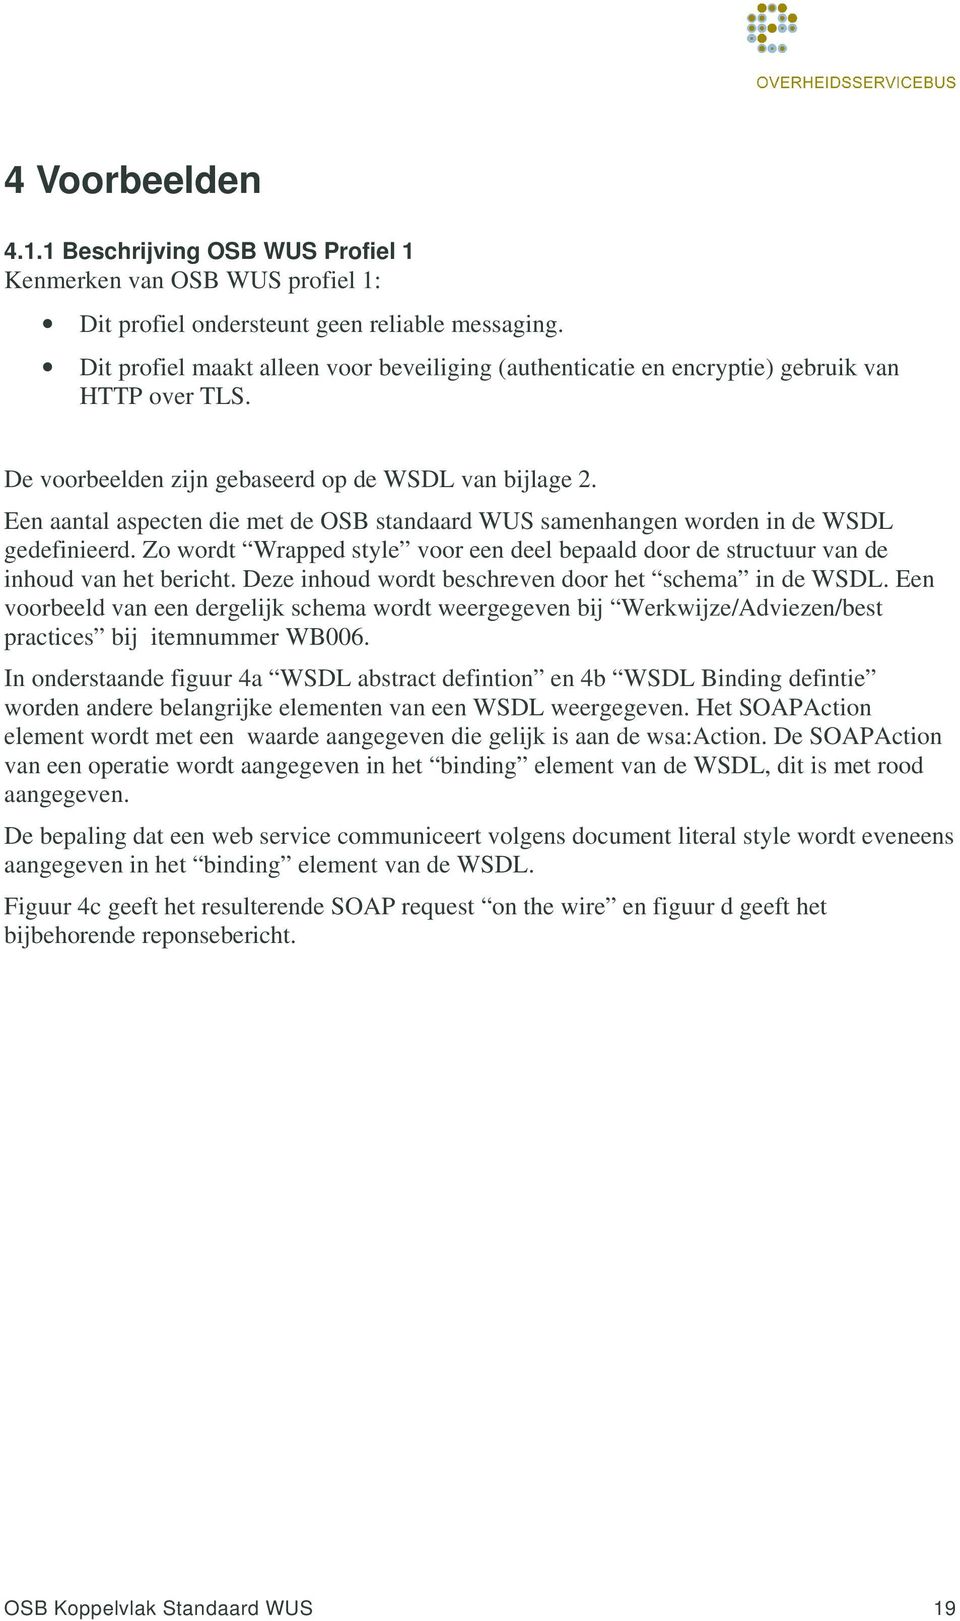 Een aantal aspecten die met de OSB standaard WUS samenhangen worden in de WSDL gedefinieerd. Zo wordt Wrapped style voor een deel bepaald door de structuur van de inhoud van het bericht.